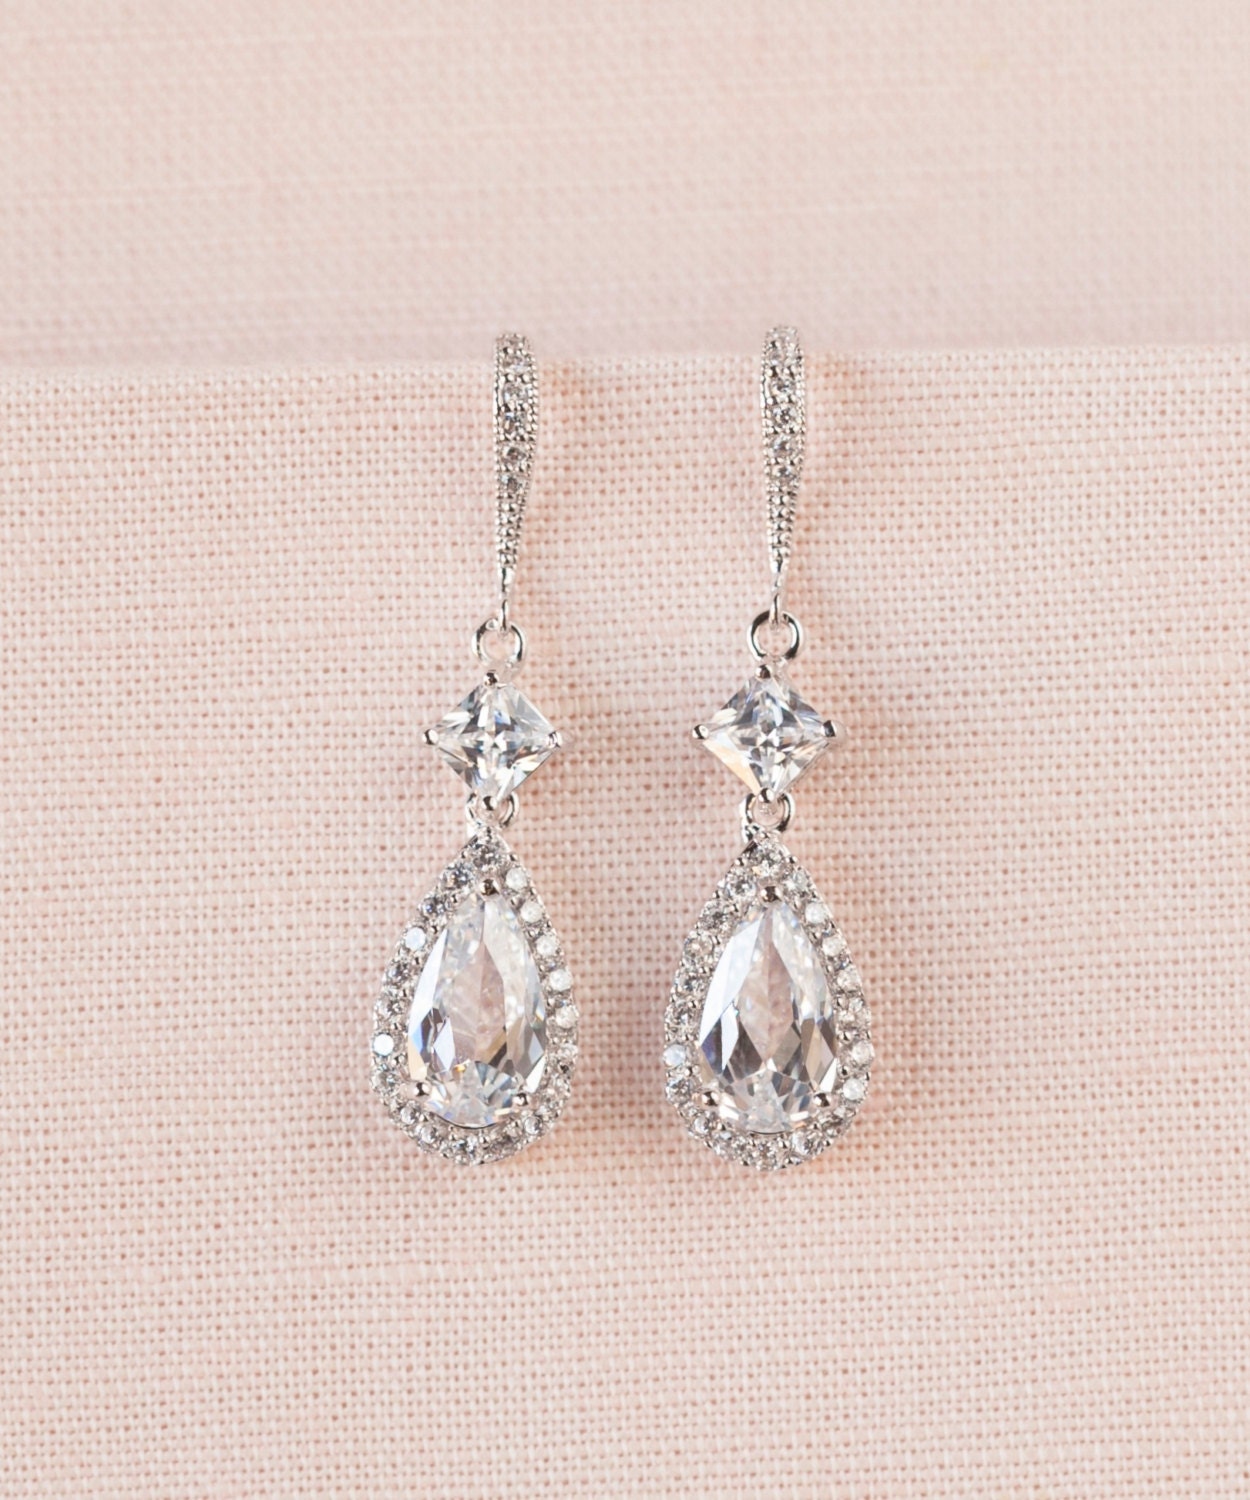 Crystal Bridal Earrings, Rose Gold Crystal Wedding earrings, Wedding earrings, Wedding Jewelry, Bridal Jewelry, Alicia Crystal Earrings